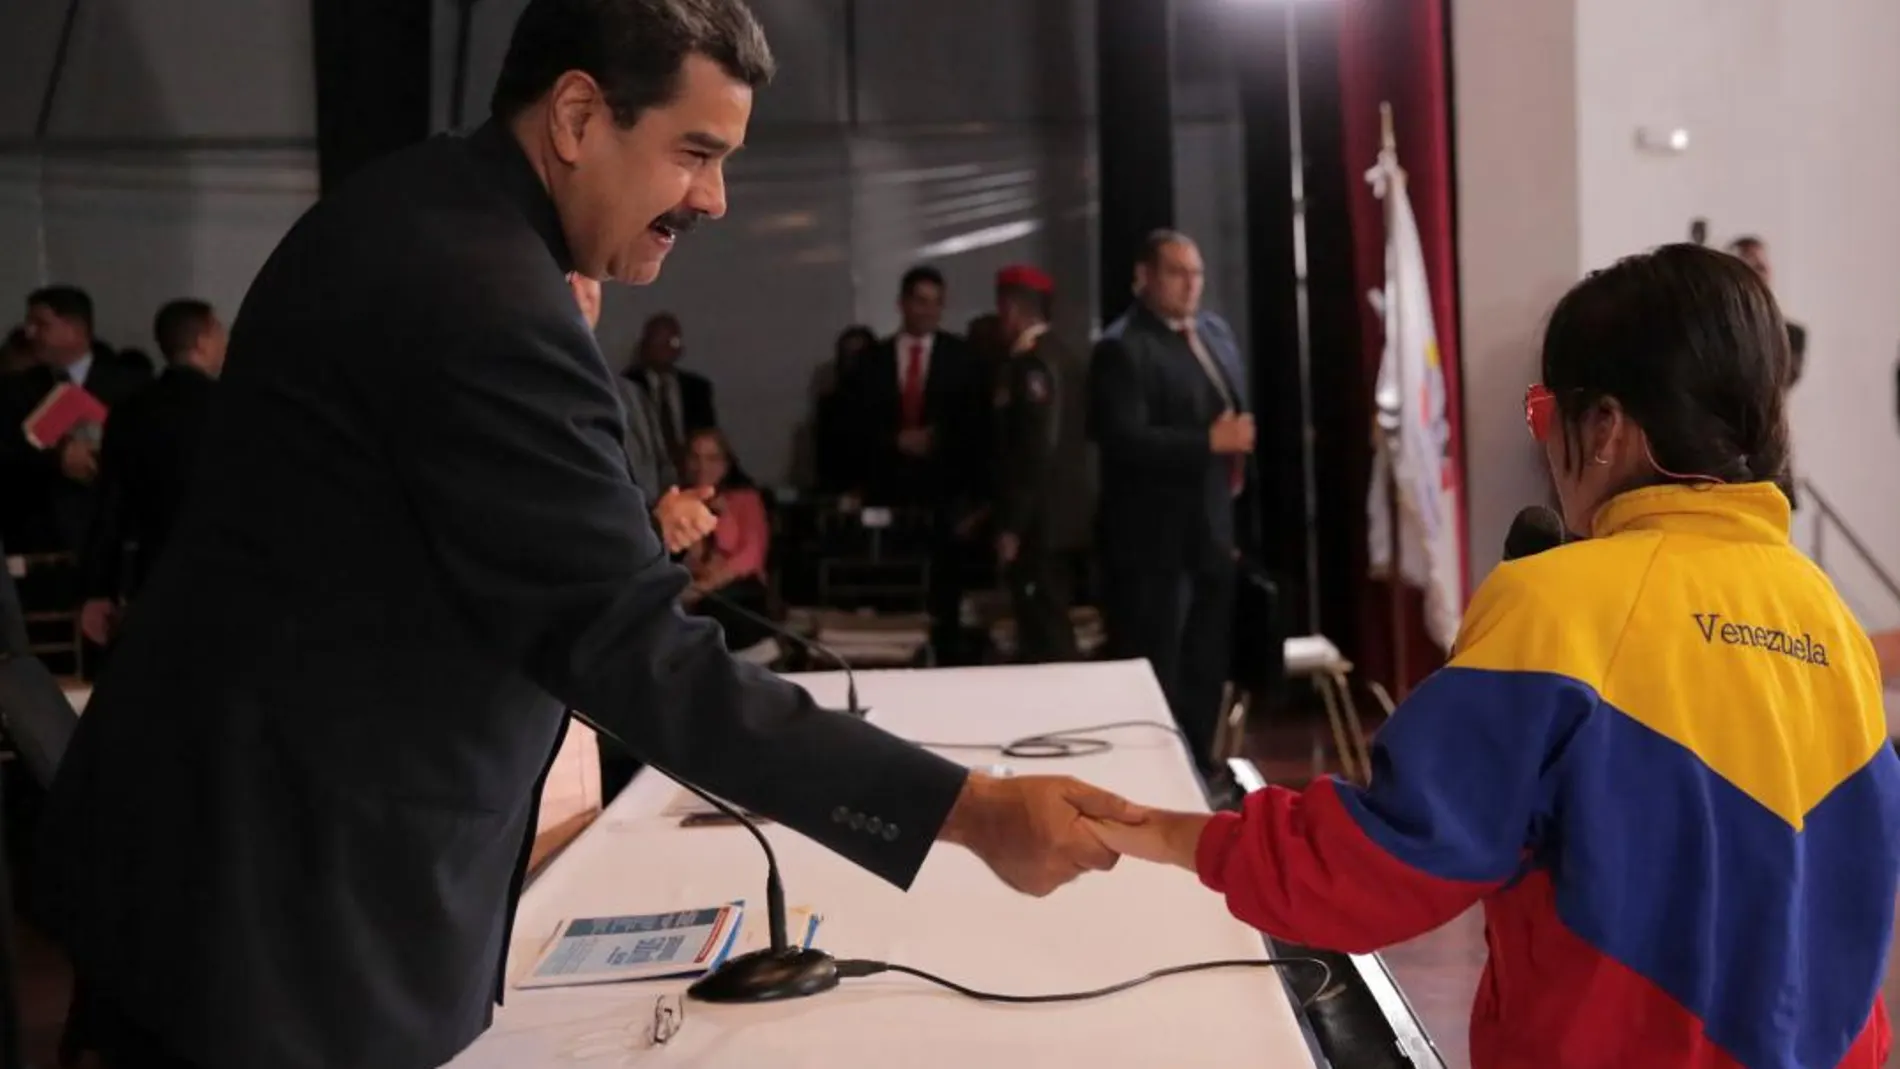 El presidente venezolano, Nicolás Maduro, saluda a una estudiante en una ceremonia de graduación / Foto: Reuters